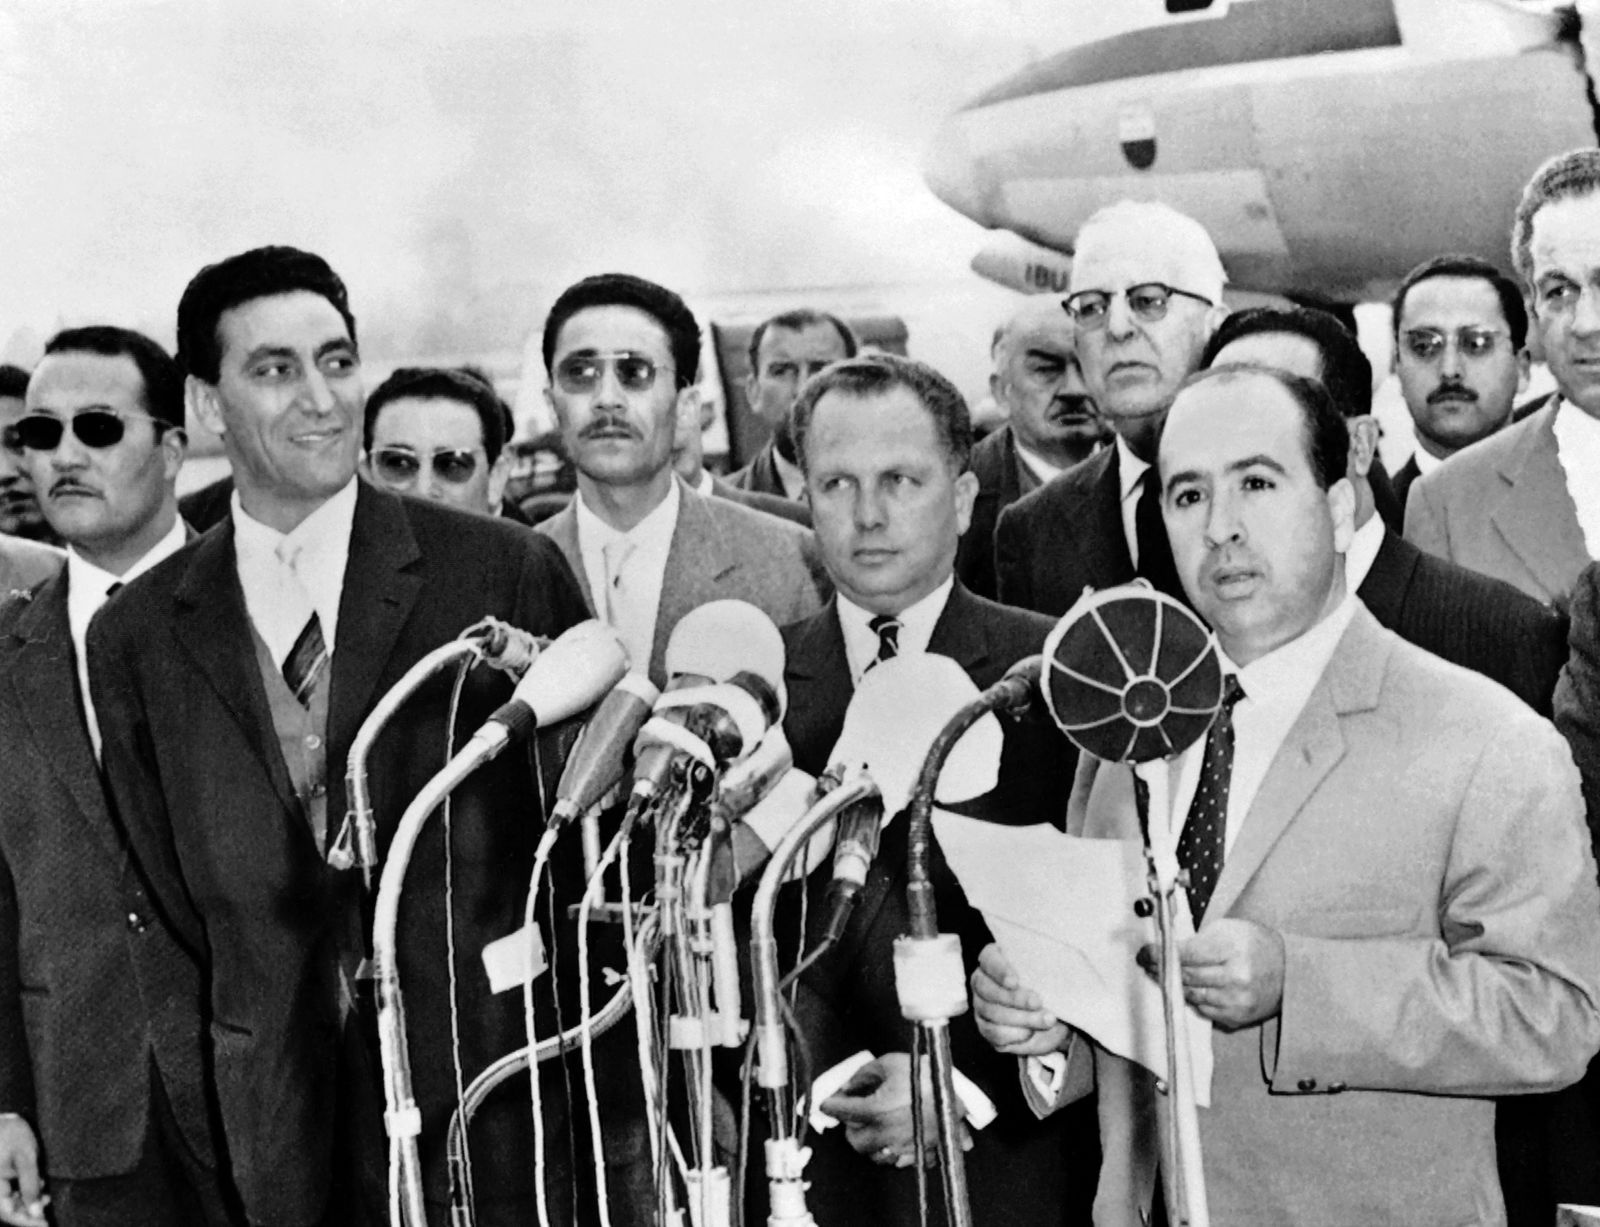 الوفد الجزائري في مفاوضات إيفيان، يتحدث في مؤتمر صحافي - 19 مارس 1962 - AFP